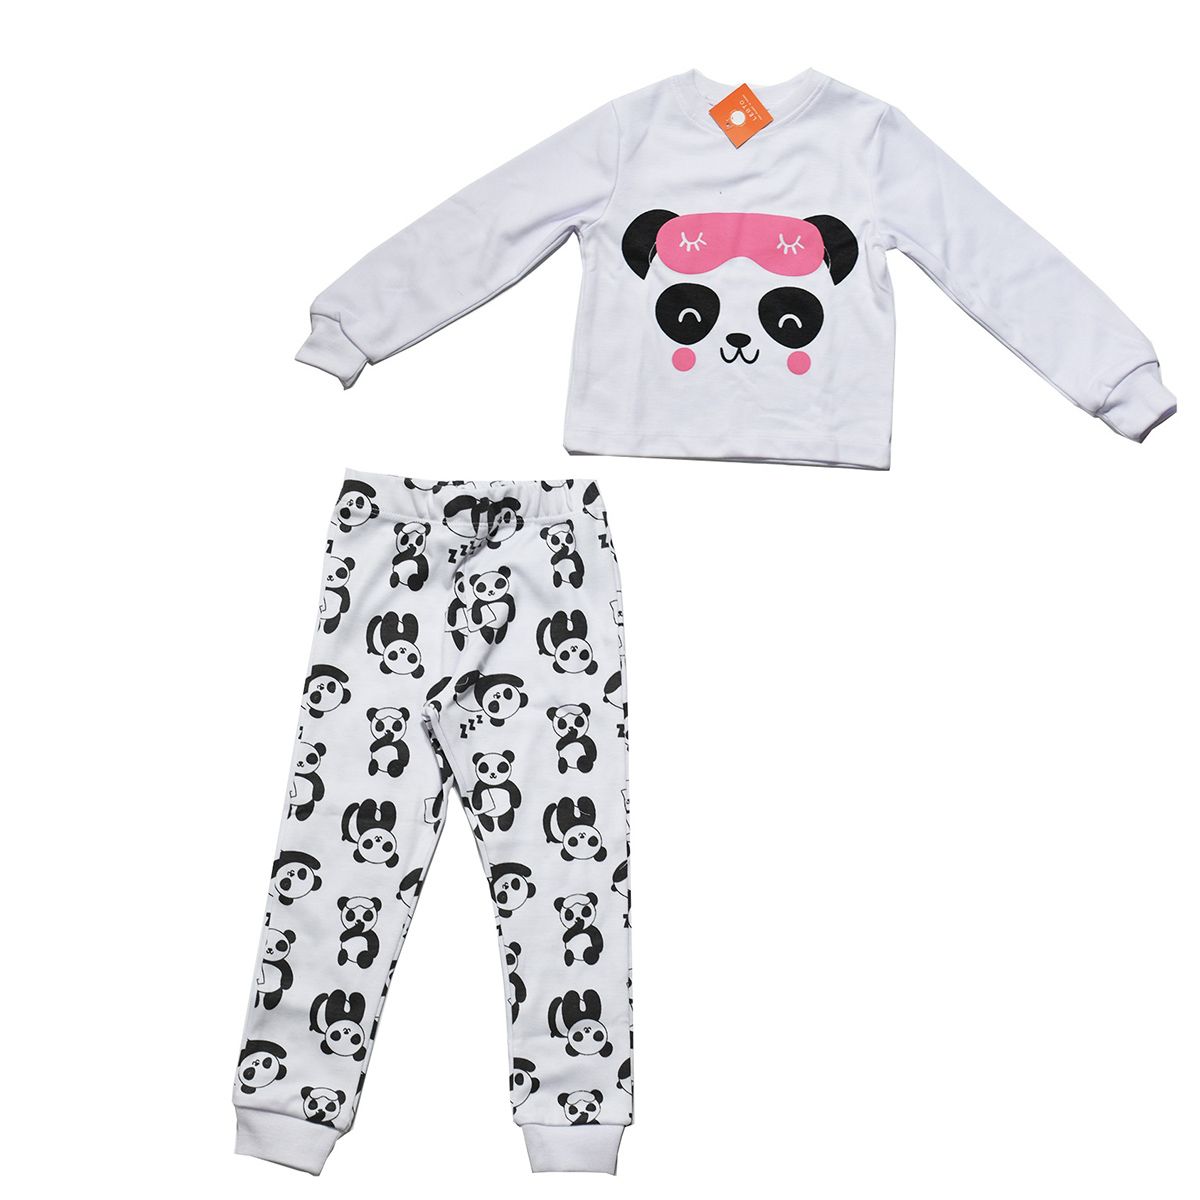 ست تی شرت و شلوار بچگانه لبتو مدل Panda کد 5227